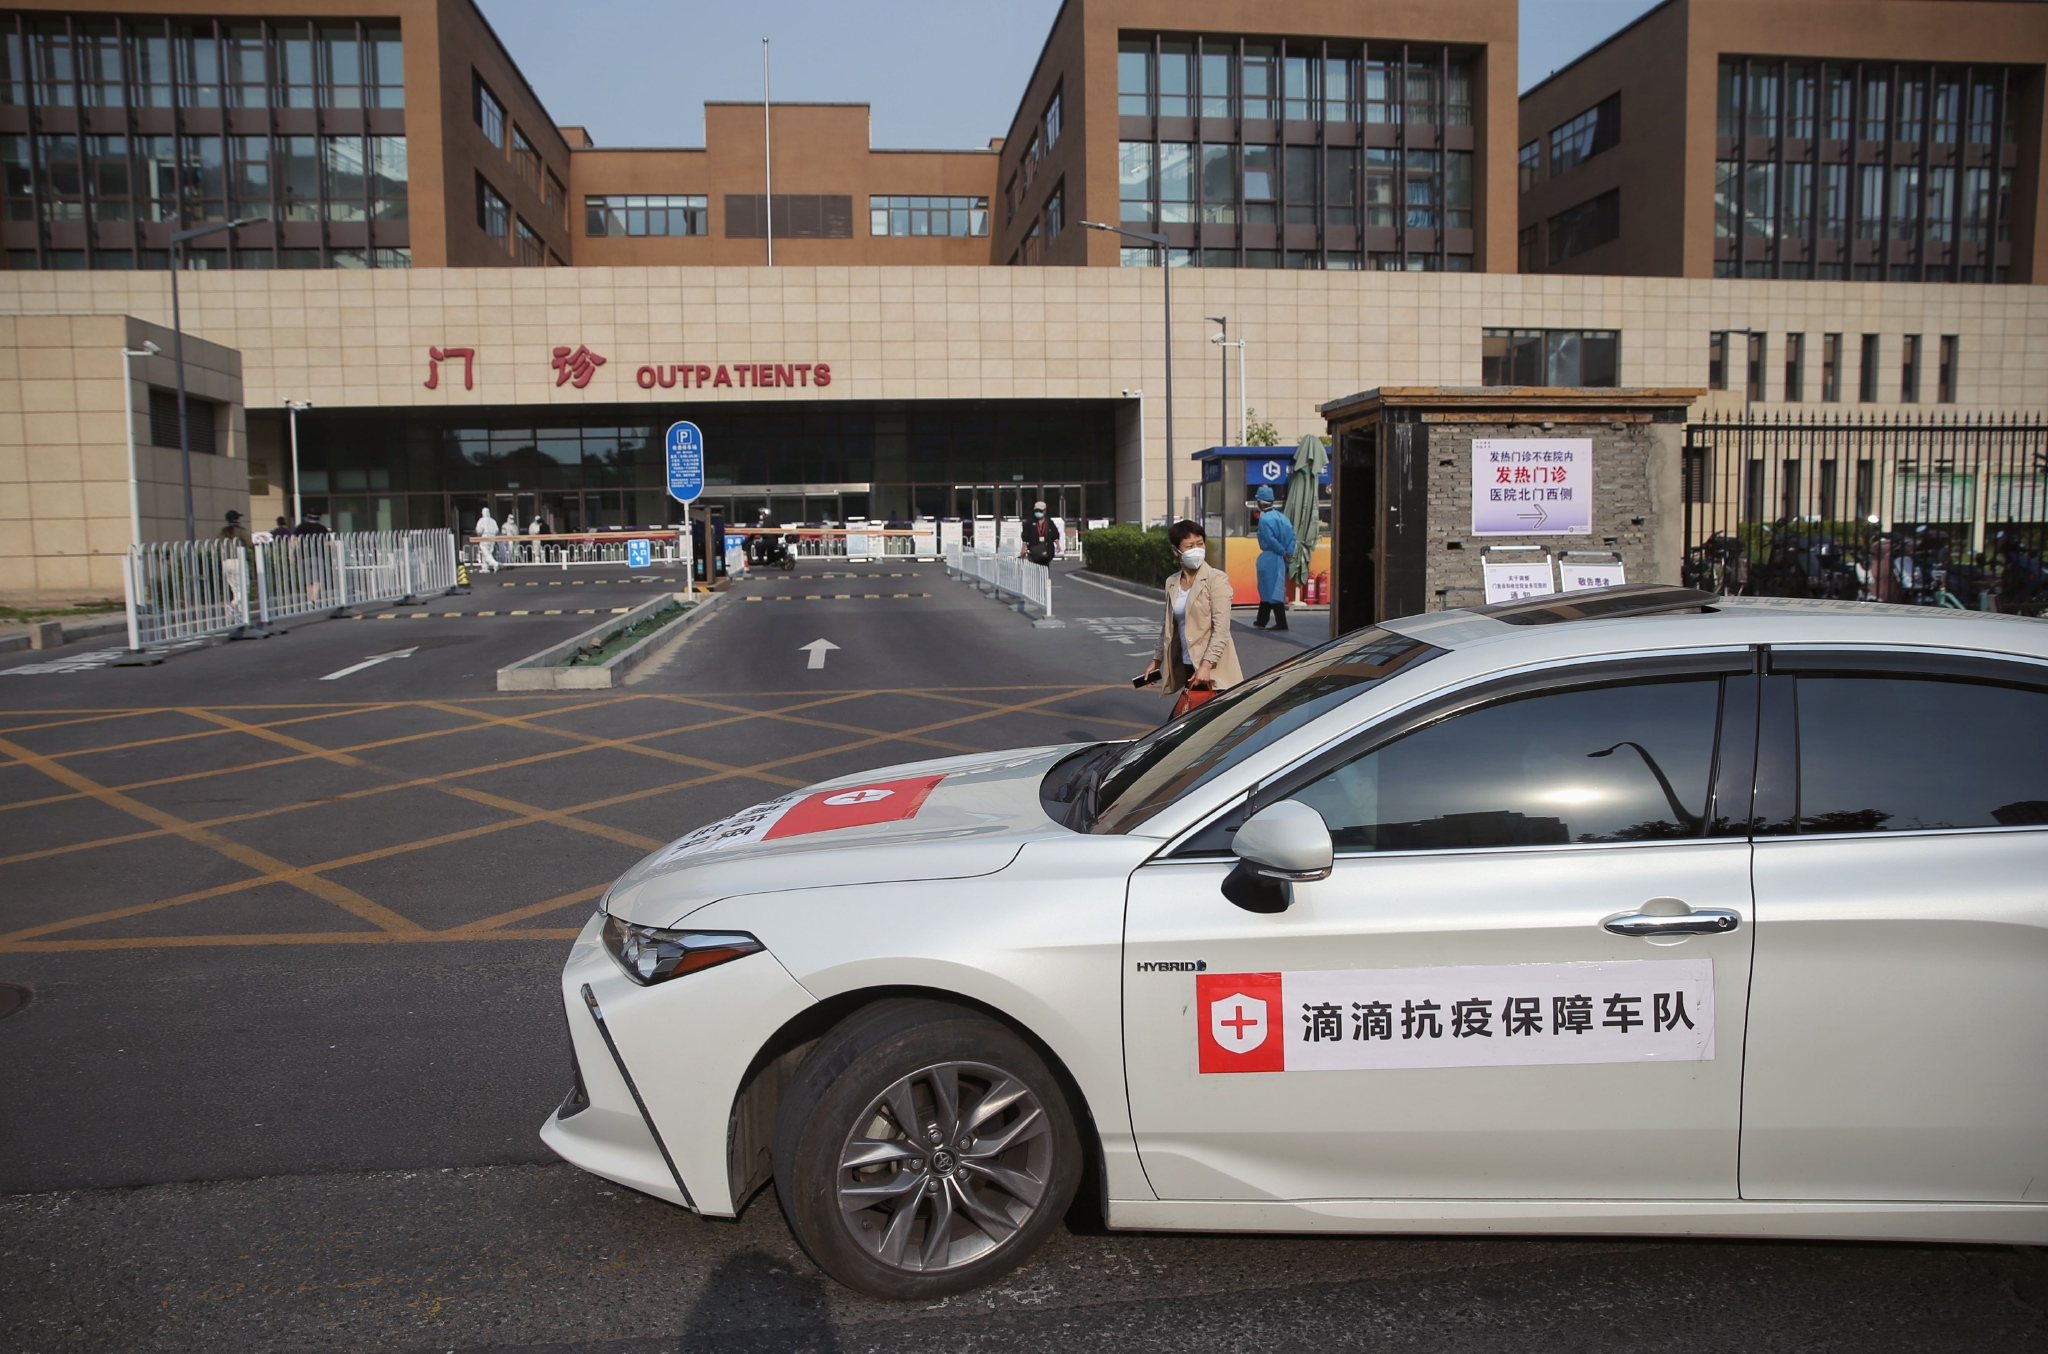 垂杨柳医院东门，医护人员乘坐保障车队的车抵达医院。新京报记者 薛珺 摄